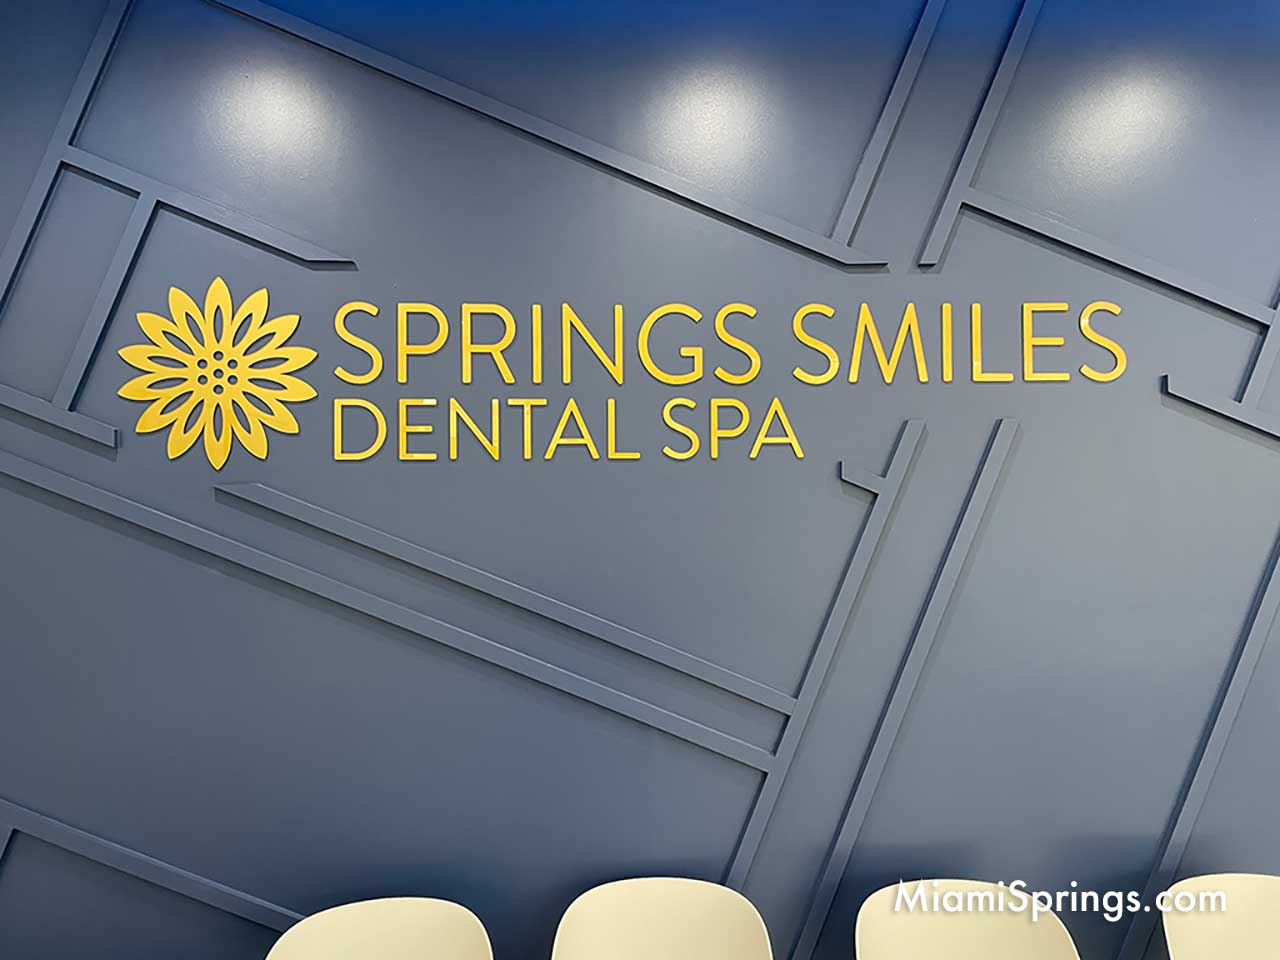 Springs Smiles Dental Spa in Miami Springs